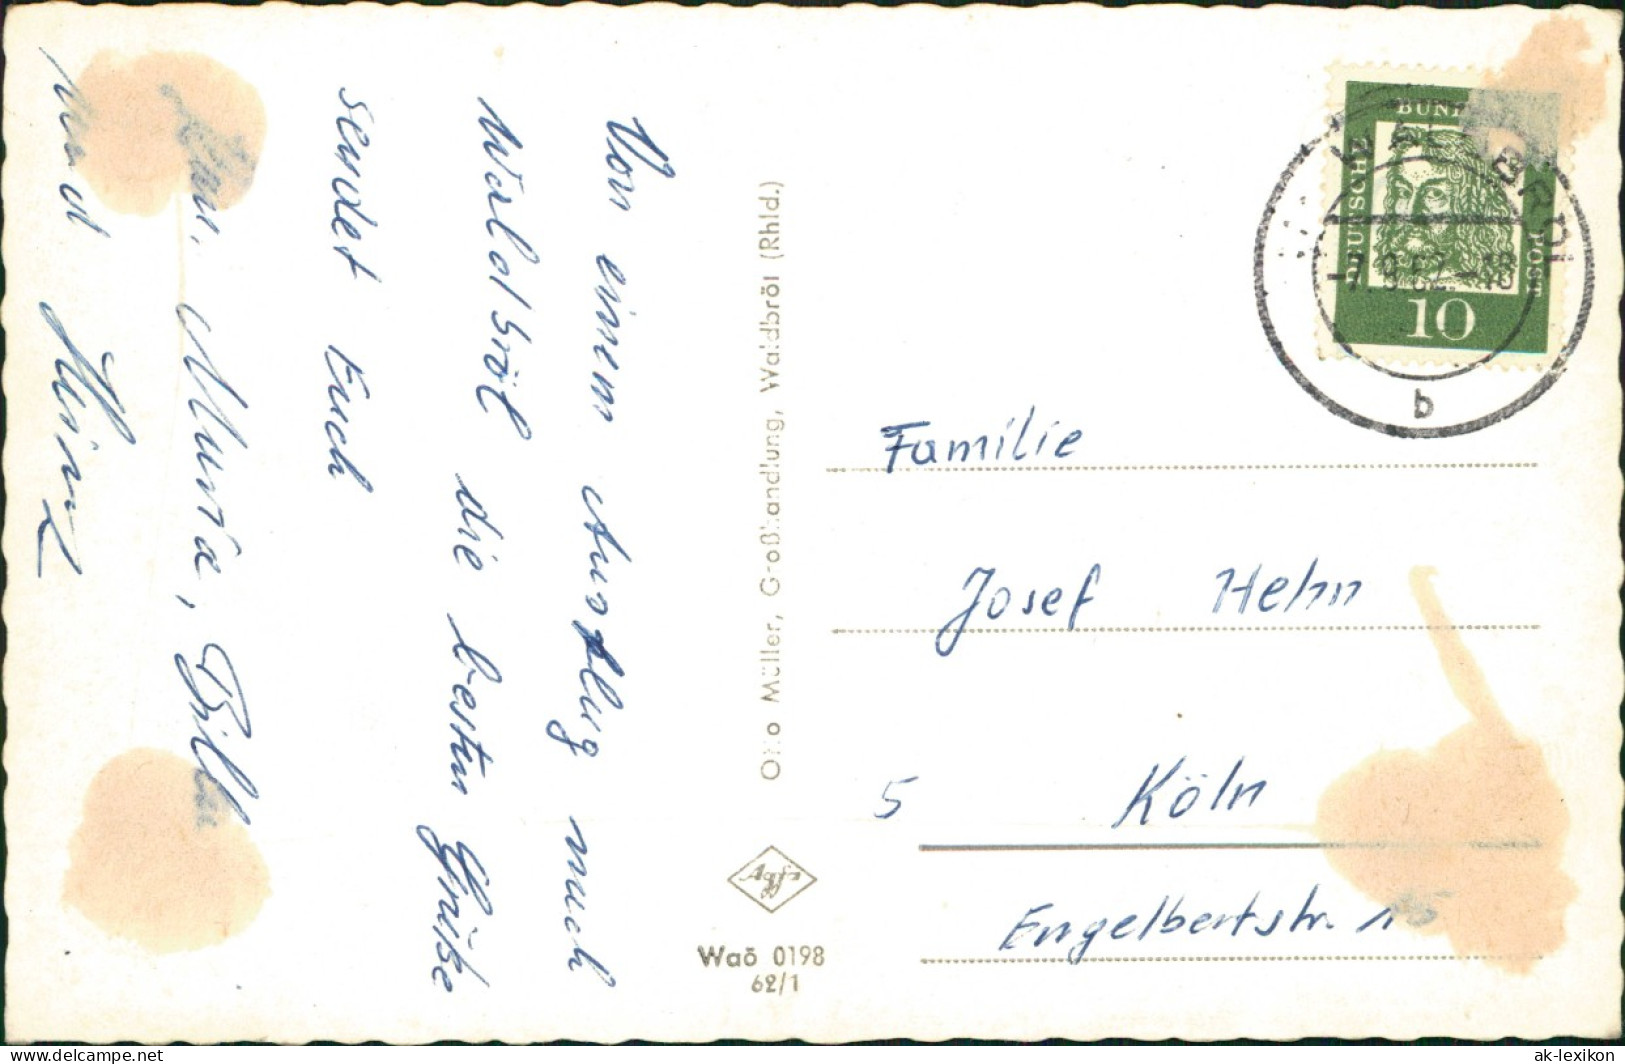 Waldbröl Mehrbild-AK Hollenberg-Gymnasium U. Ortsansichten 1962 - Waldbroel